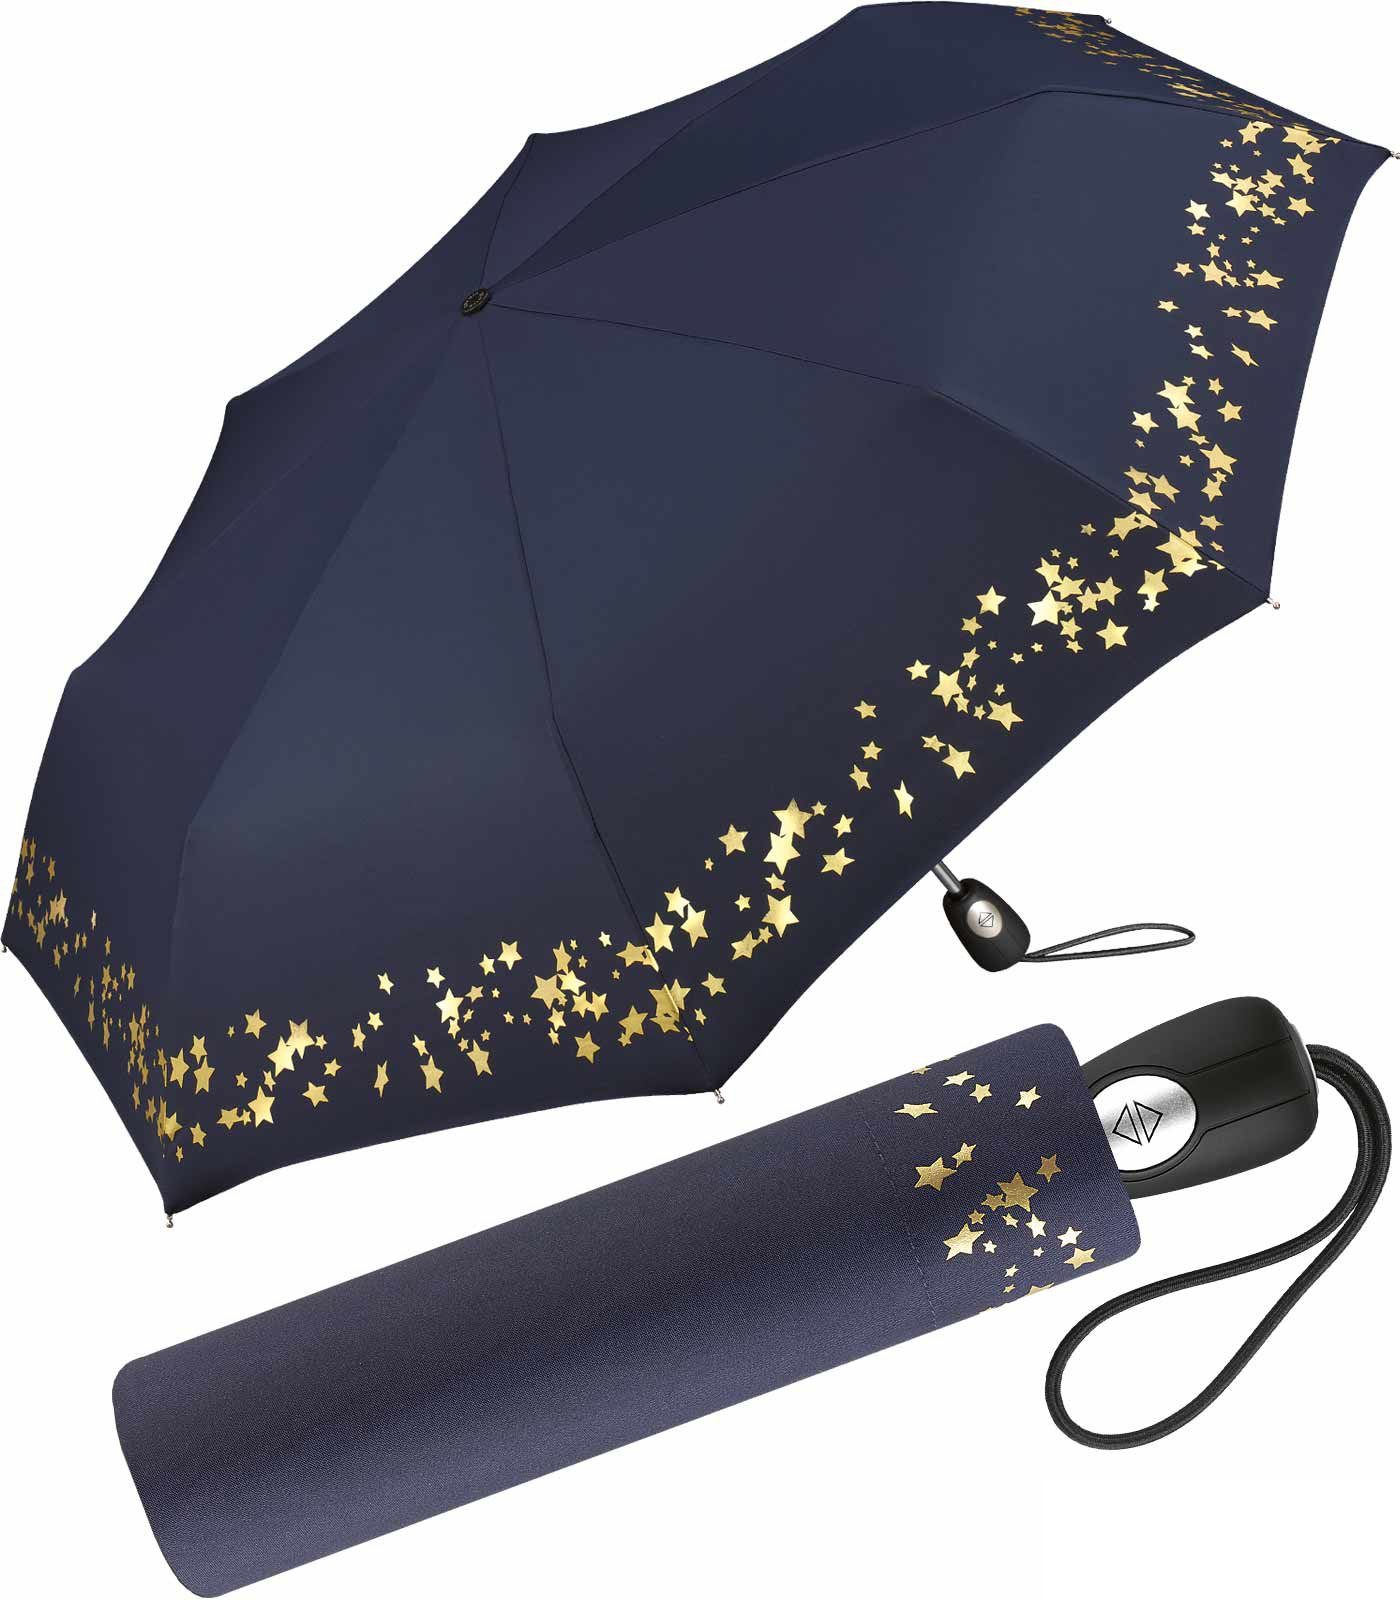 Pierre Cardin Taschenregenschirm schöner verspieltem Design traumhafte mit Sterne Auf-Zu-Automatik, Damen-Regenschirm in blau-gold